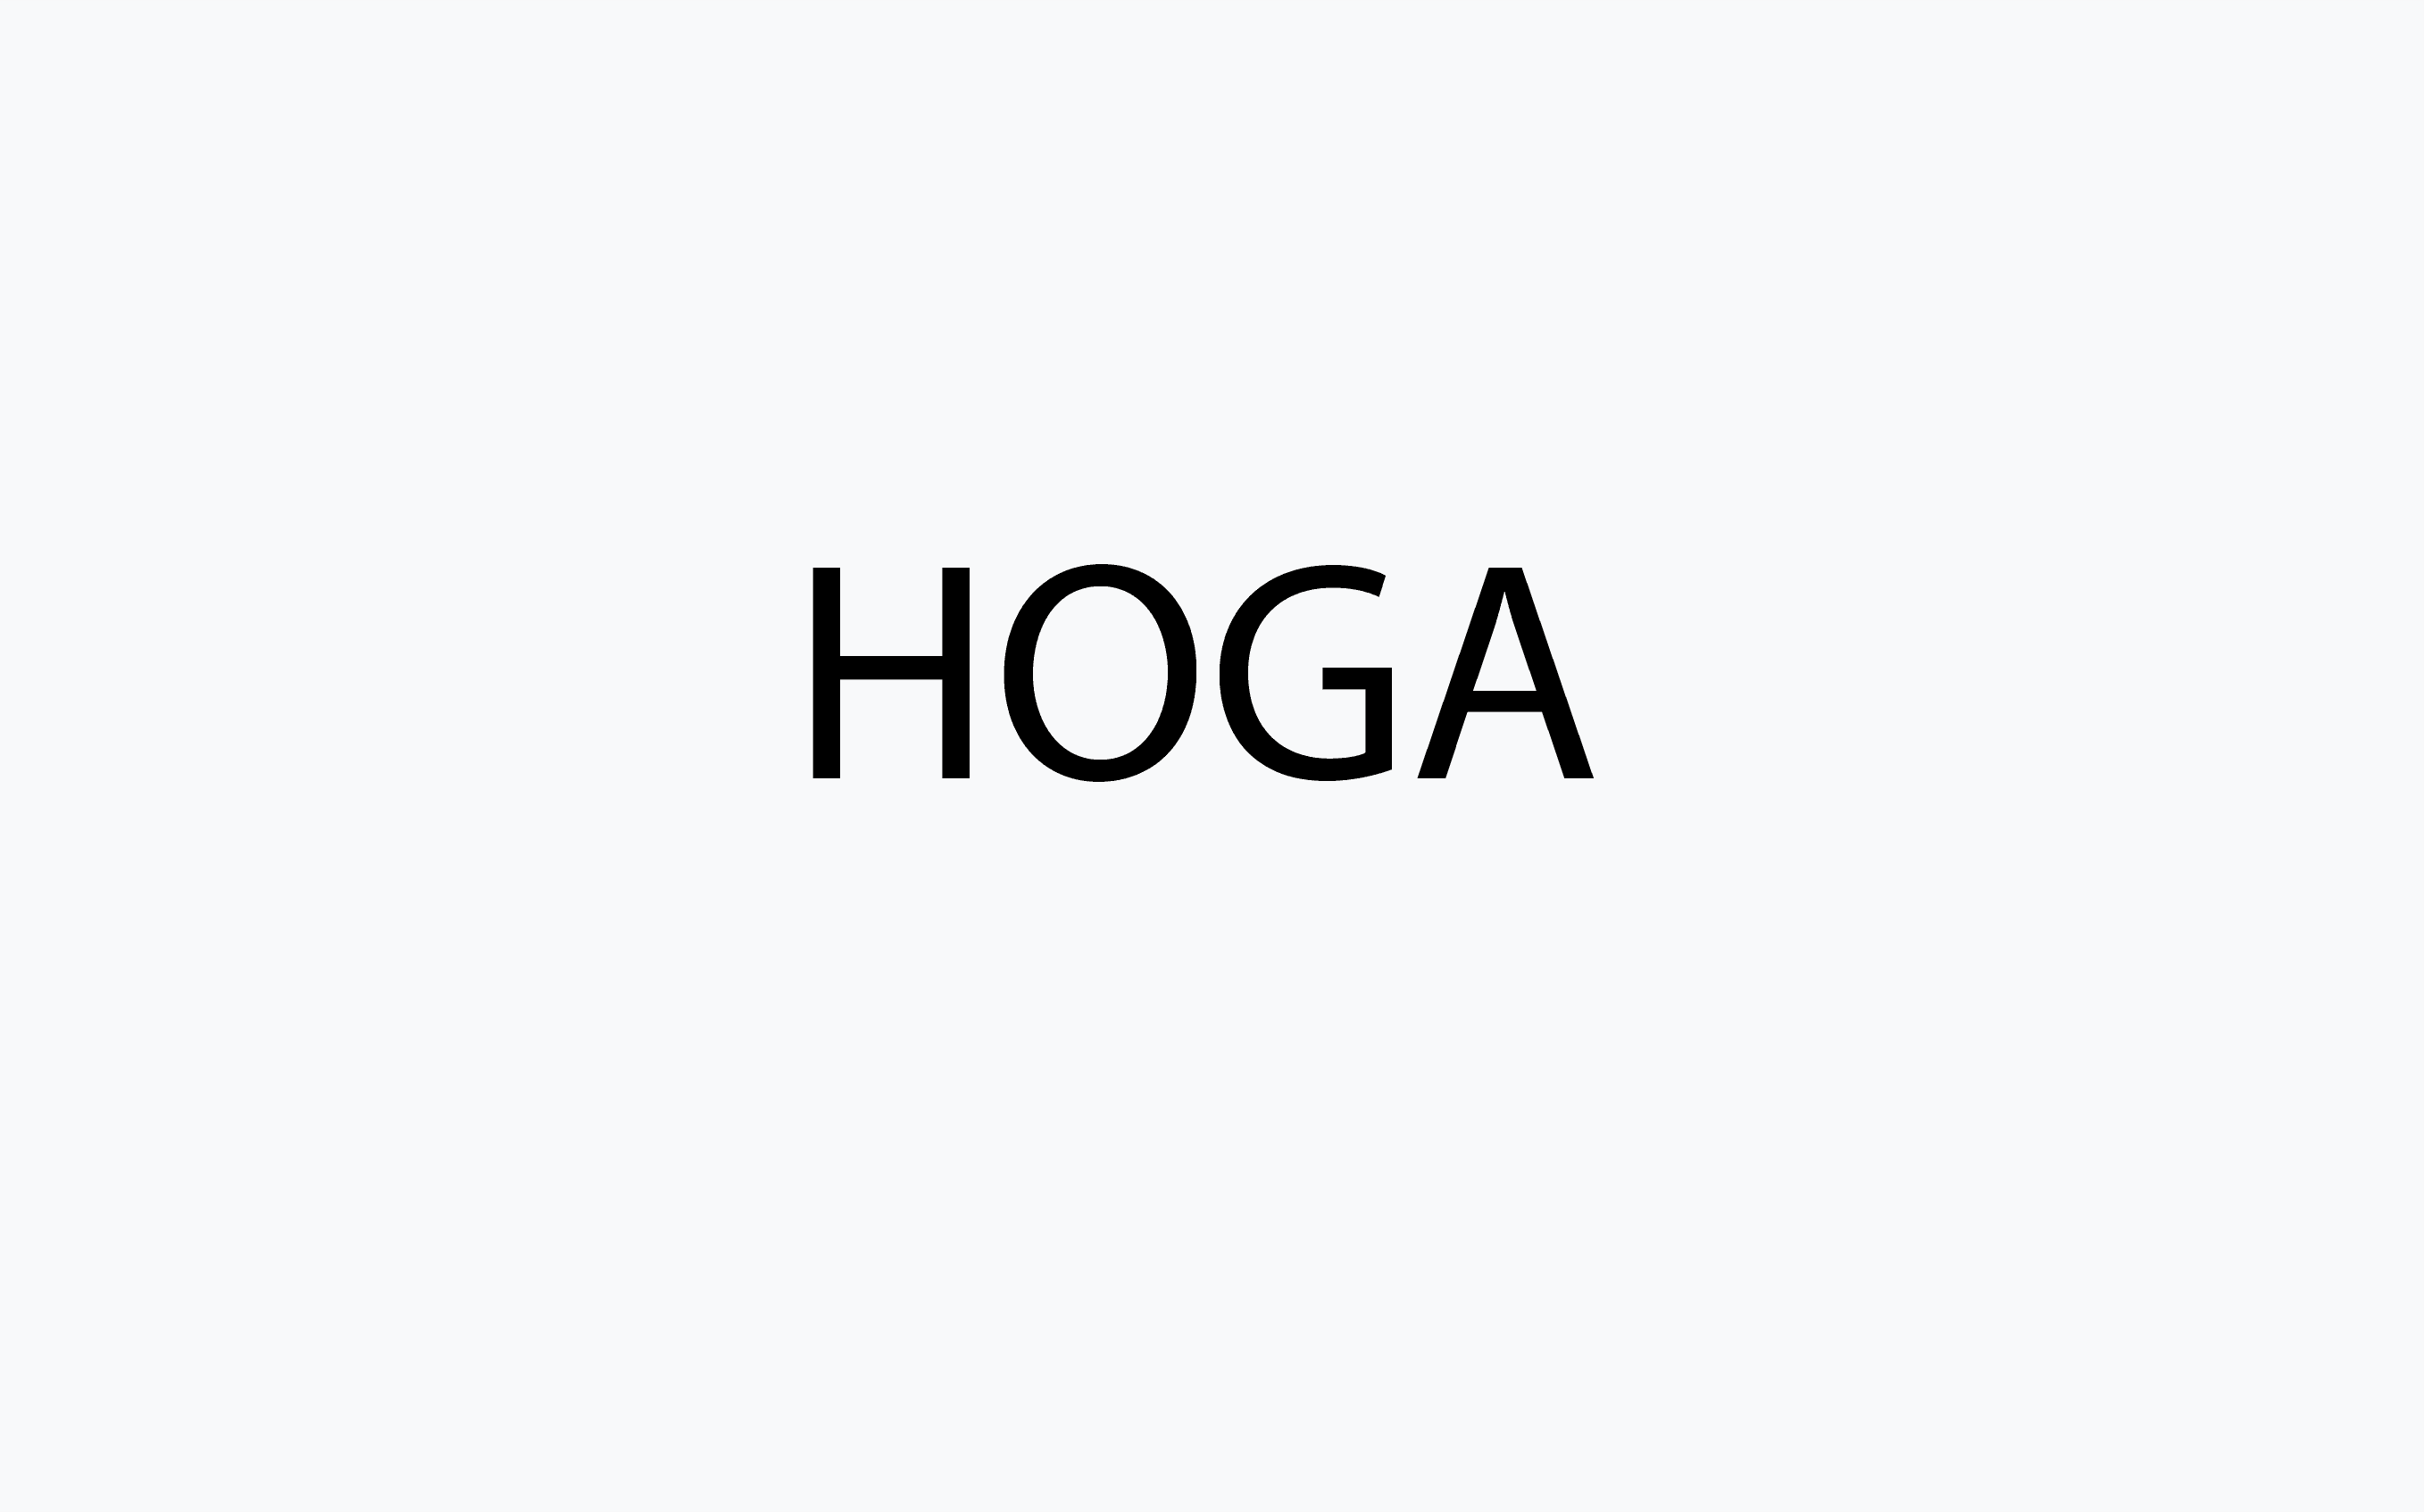 Hoga category